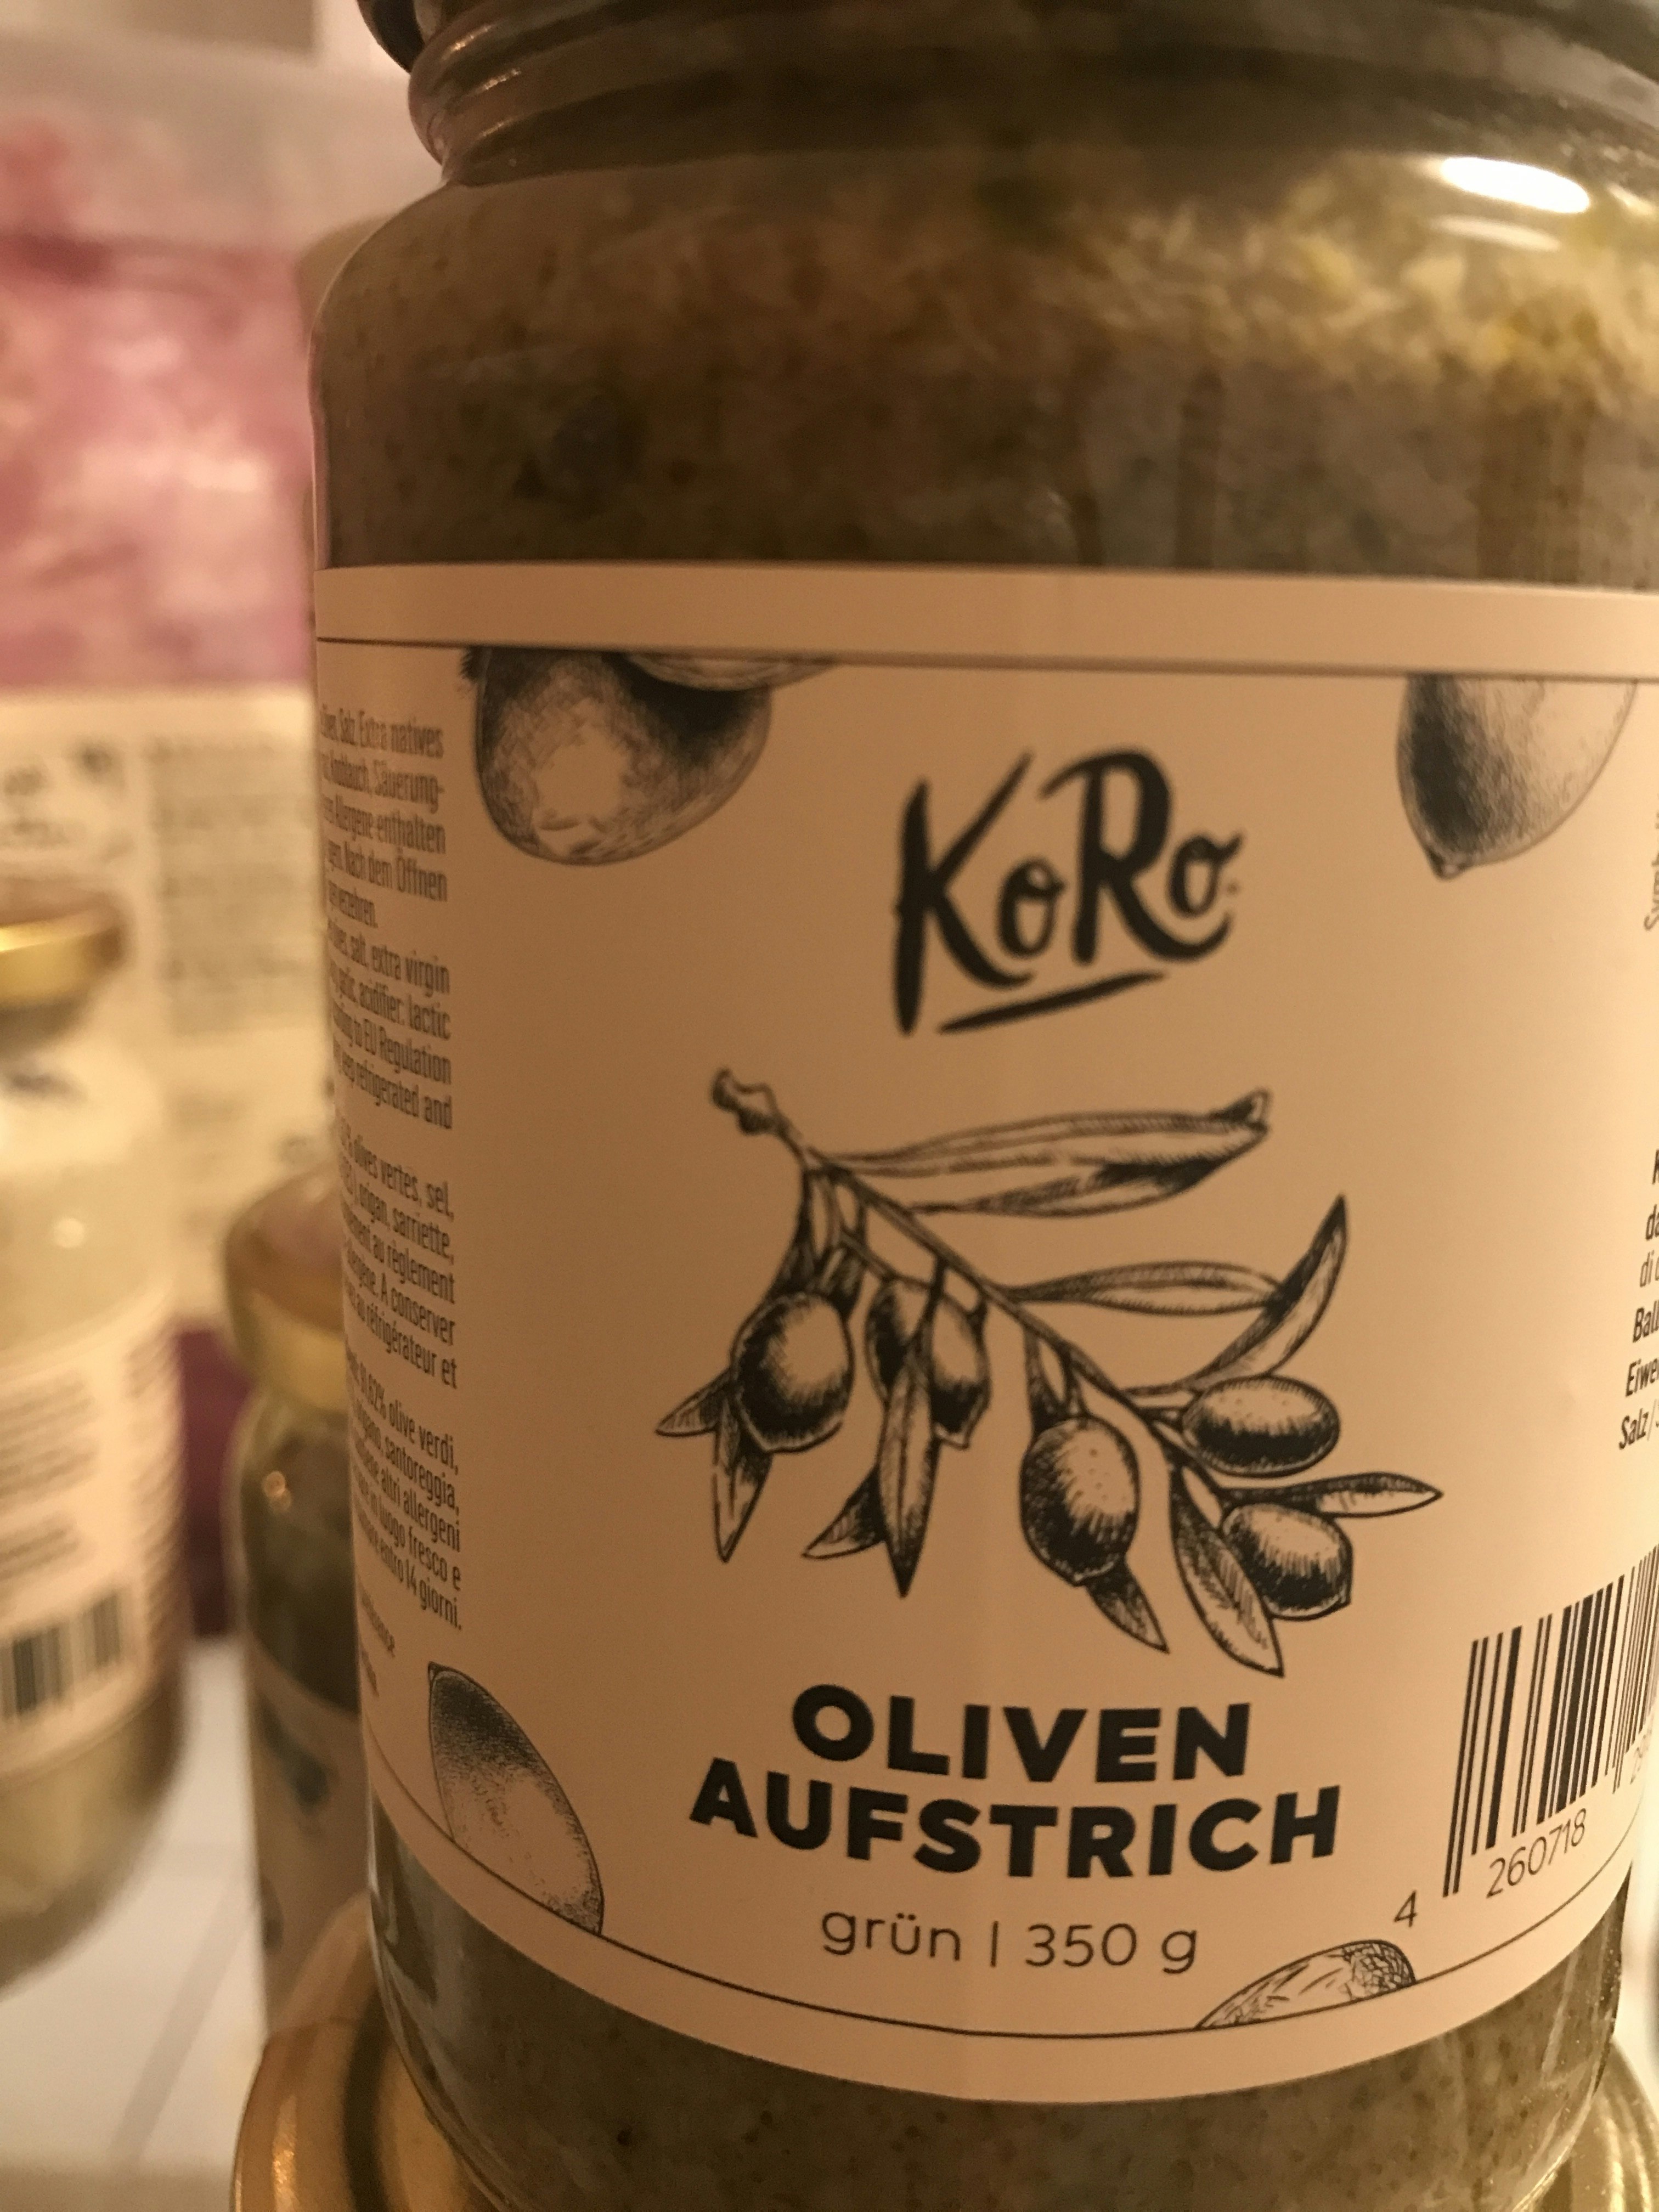 Oliven Aufstrich grün kaufen | KoRo Austria